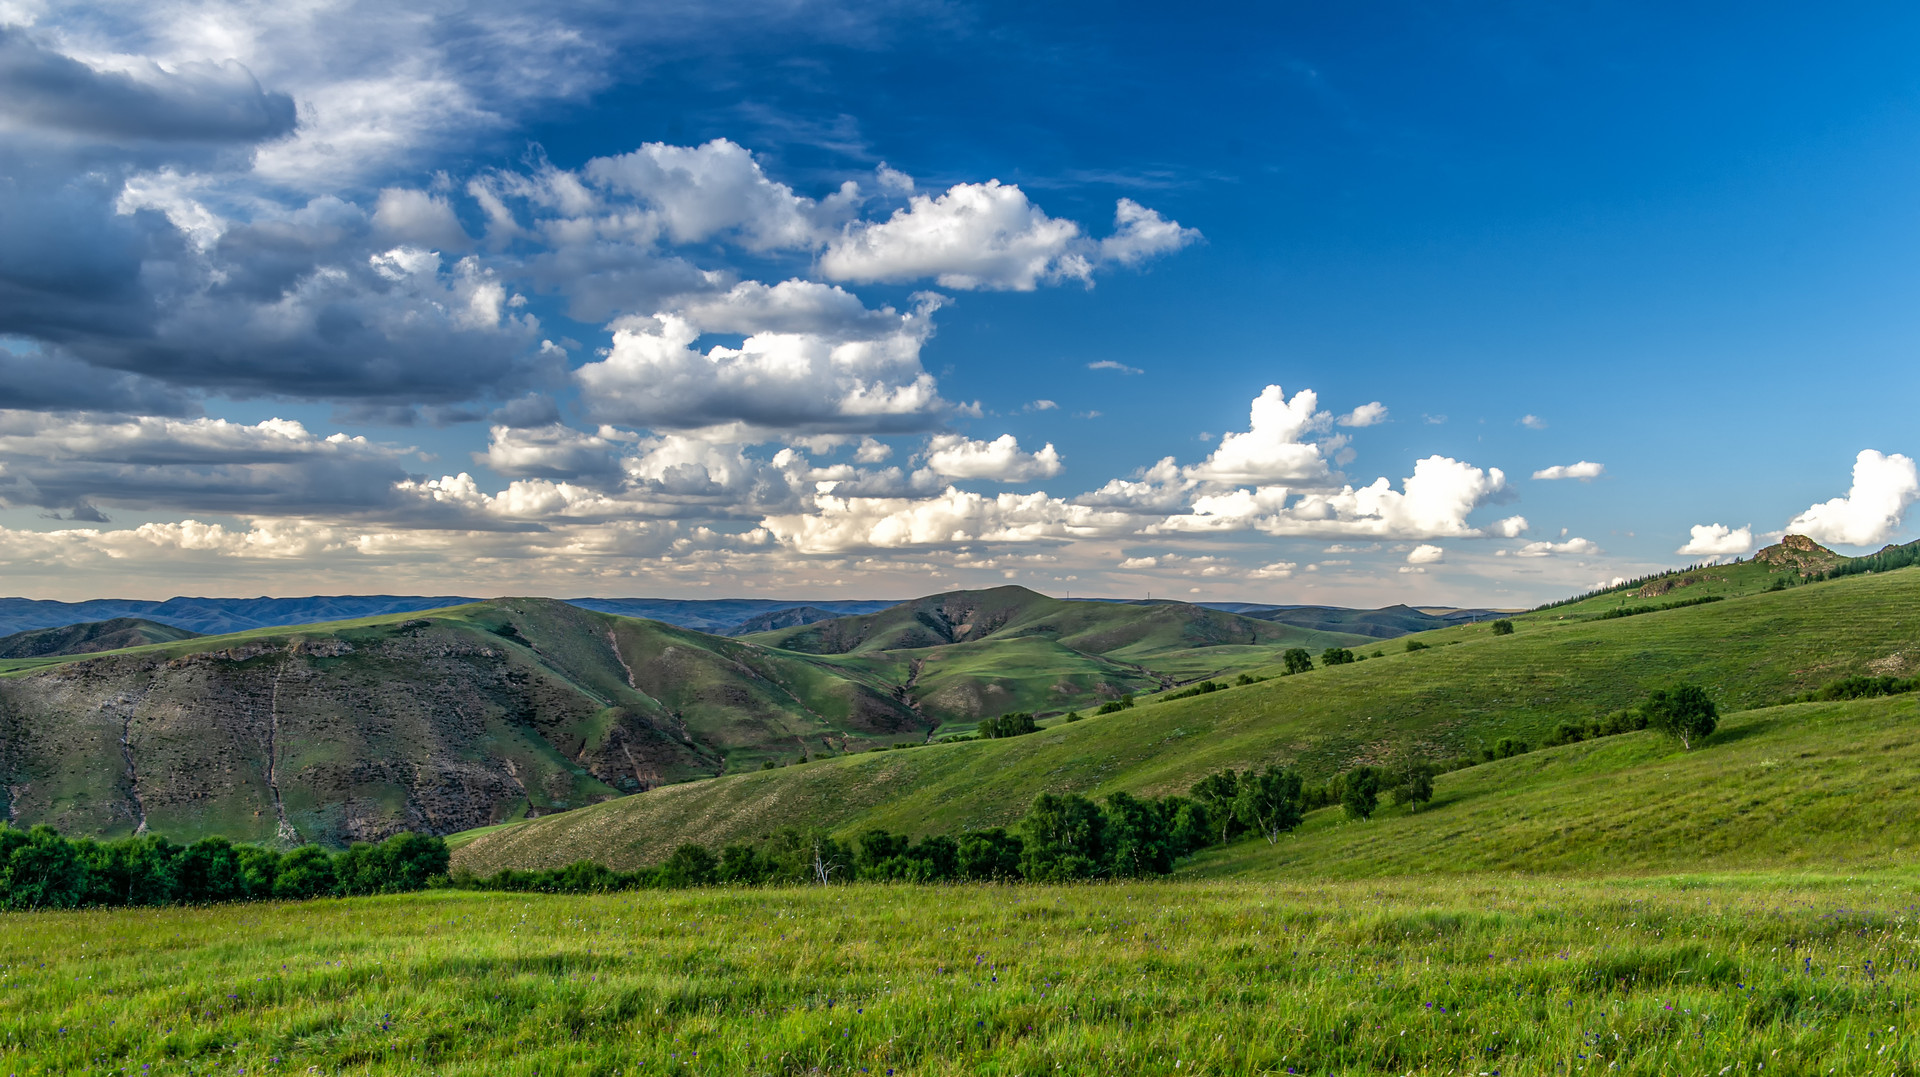 七月旅游去哪里:内蒙古作为大草原的天堂,这些理由让你无法拒绝!